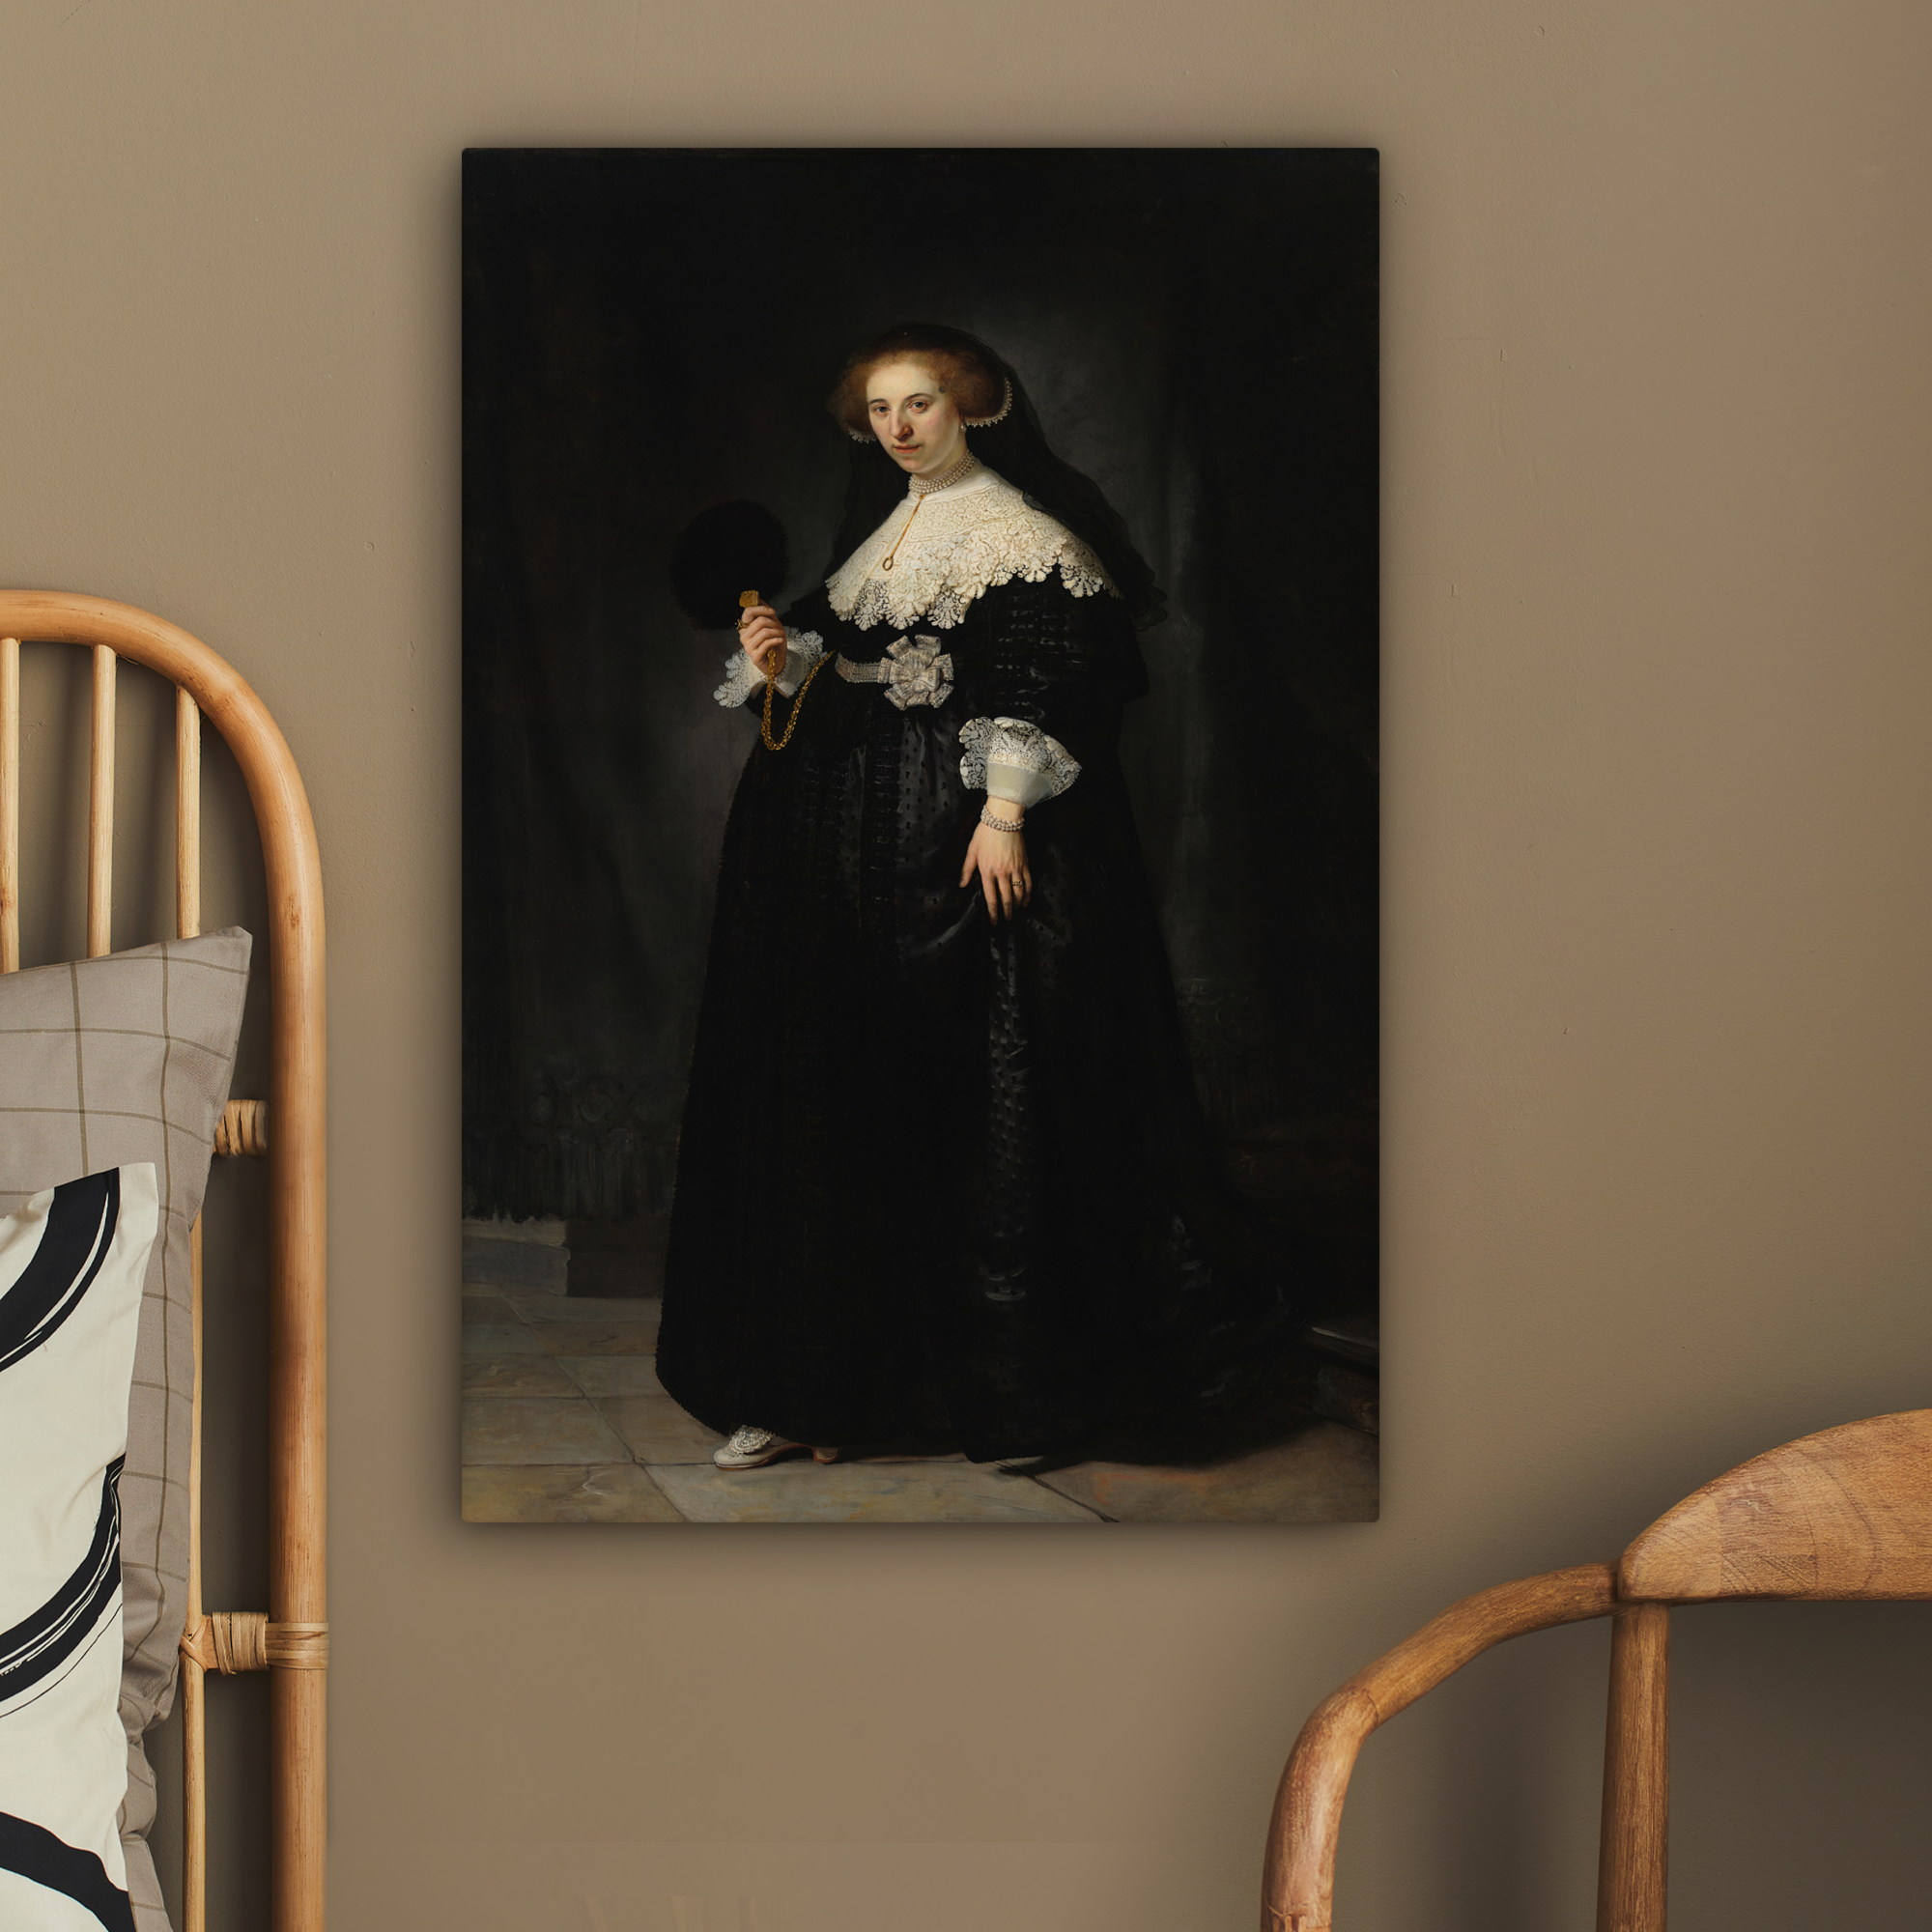 Tableau sur toile - Le portrait de mariage d'Oopjen Coppit - Rembrandt van Rijn-2